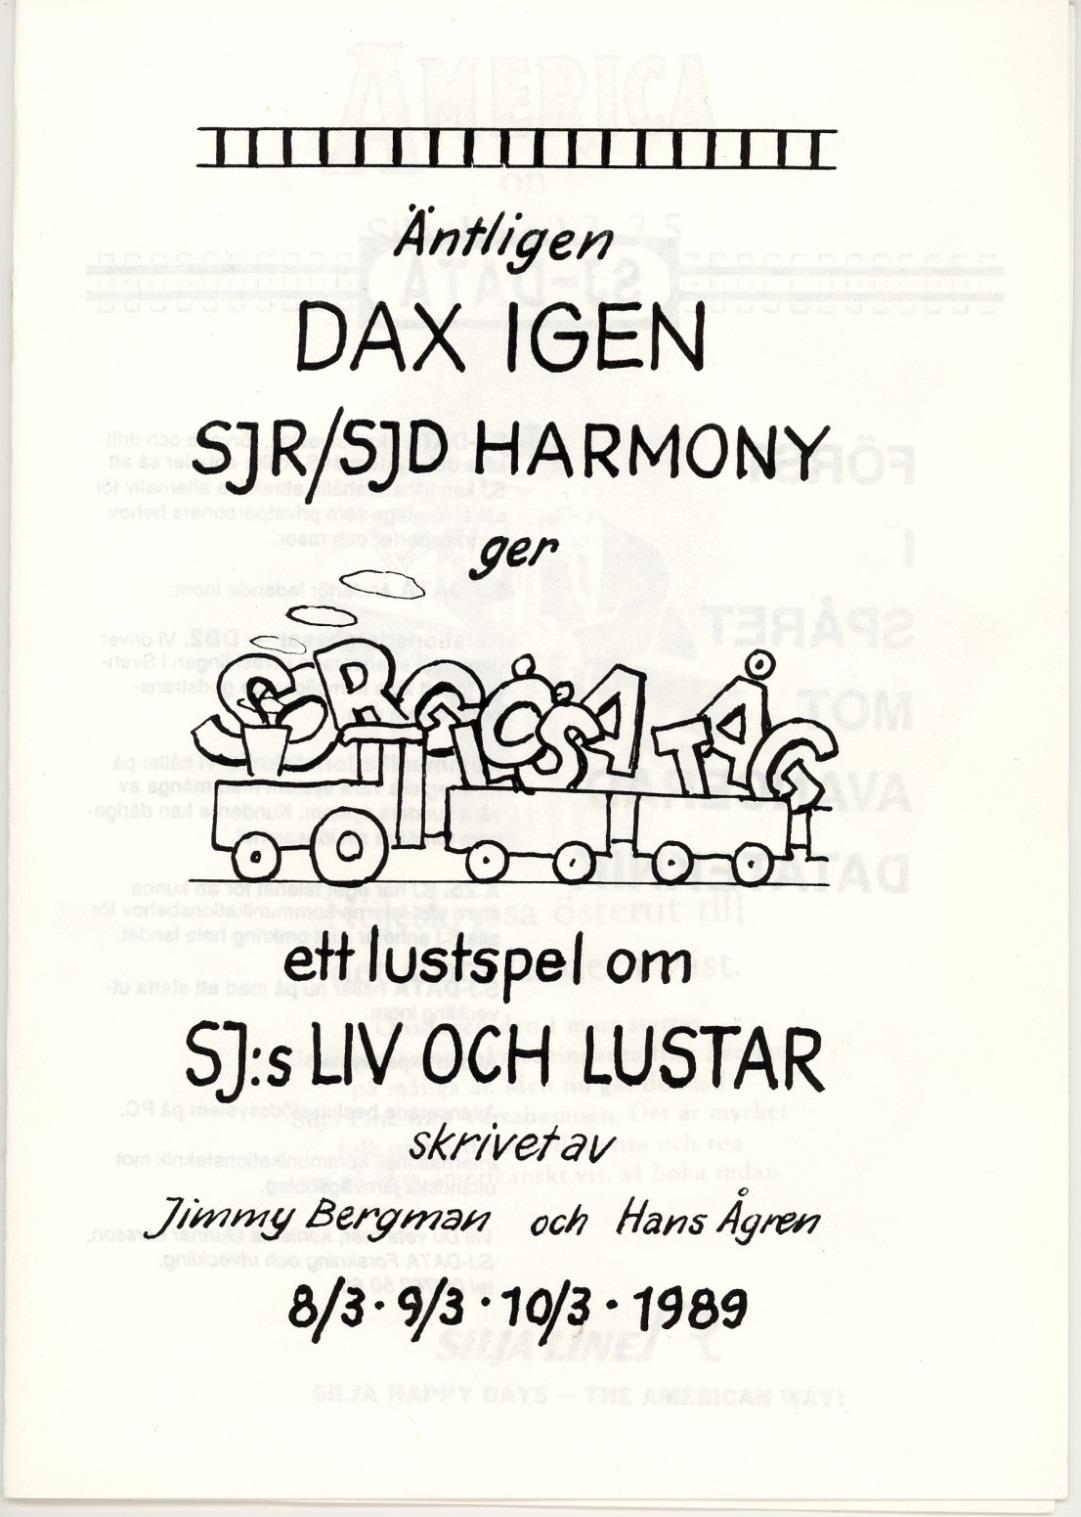 Även Hasse Ågren, den gode medförfattaren till alla revyer, lämnade SJR för att börja på SJ Data i augusti 1987.